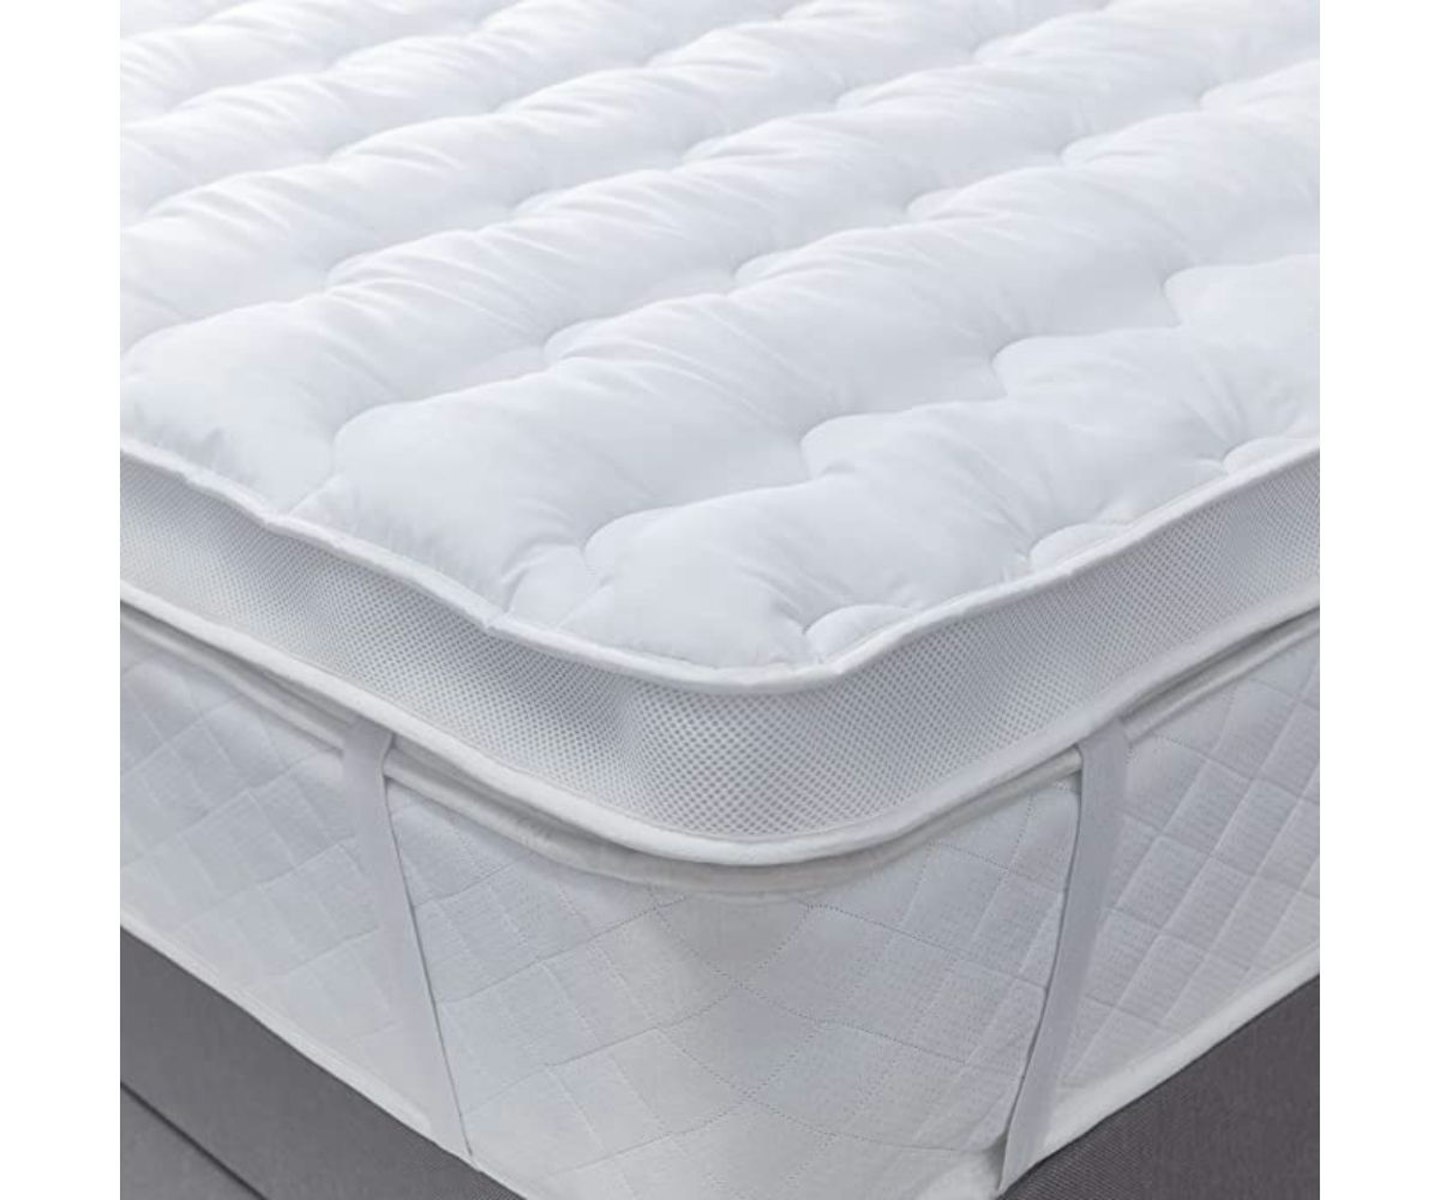 silentnight airmax 600 mattress topper review